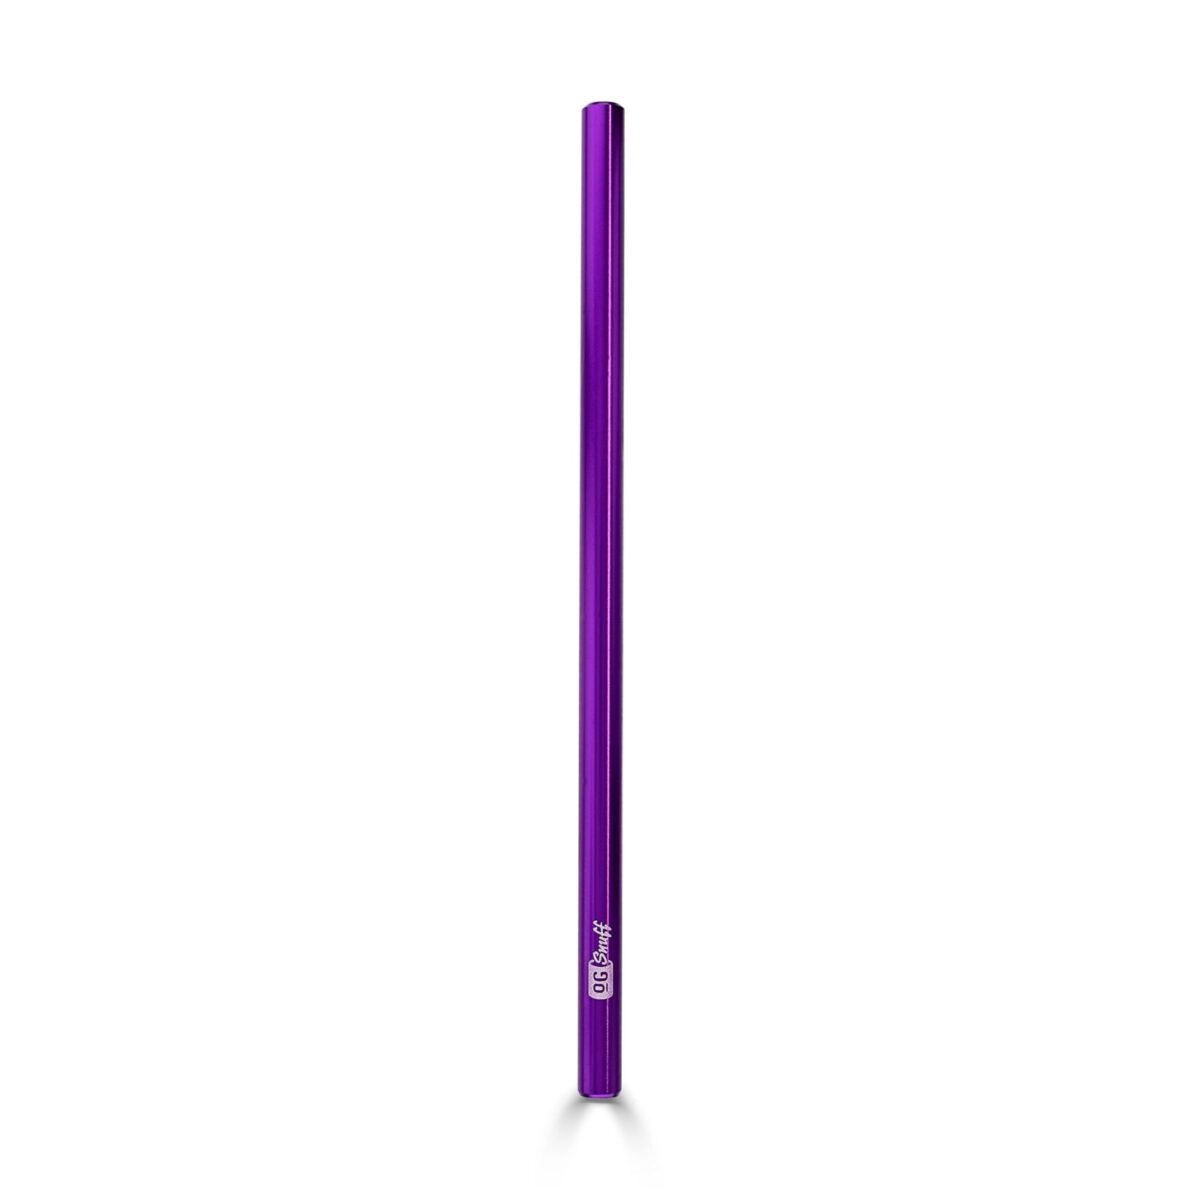 OGSnuff XL Snuff Straw – Stylish Purple Aluminum